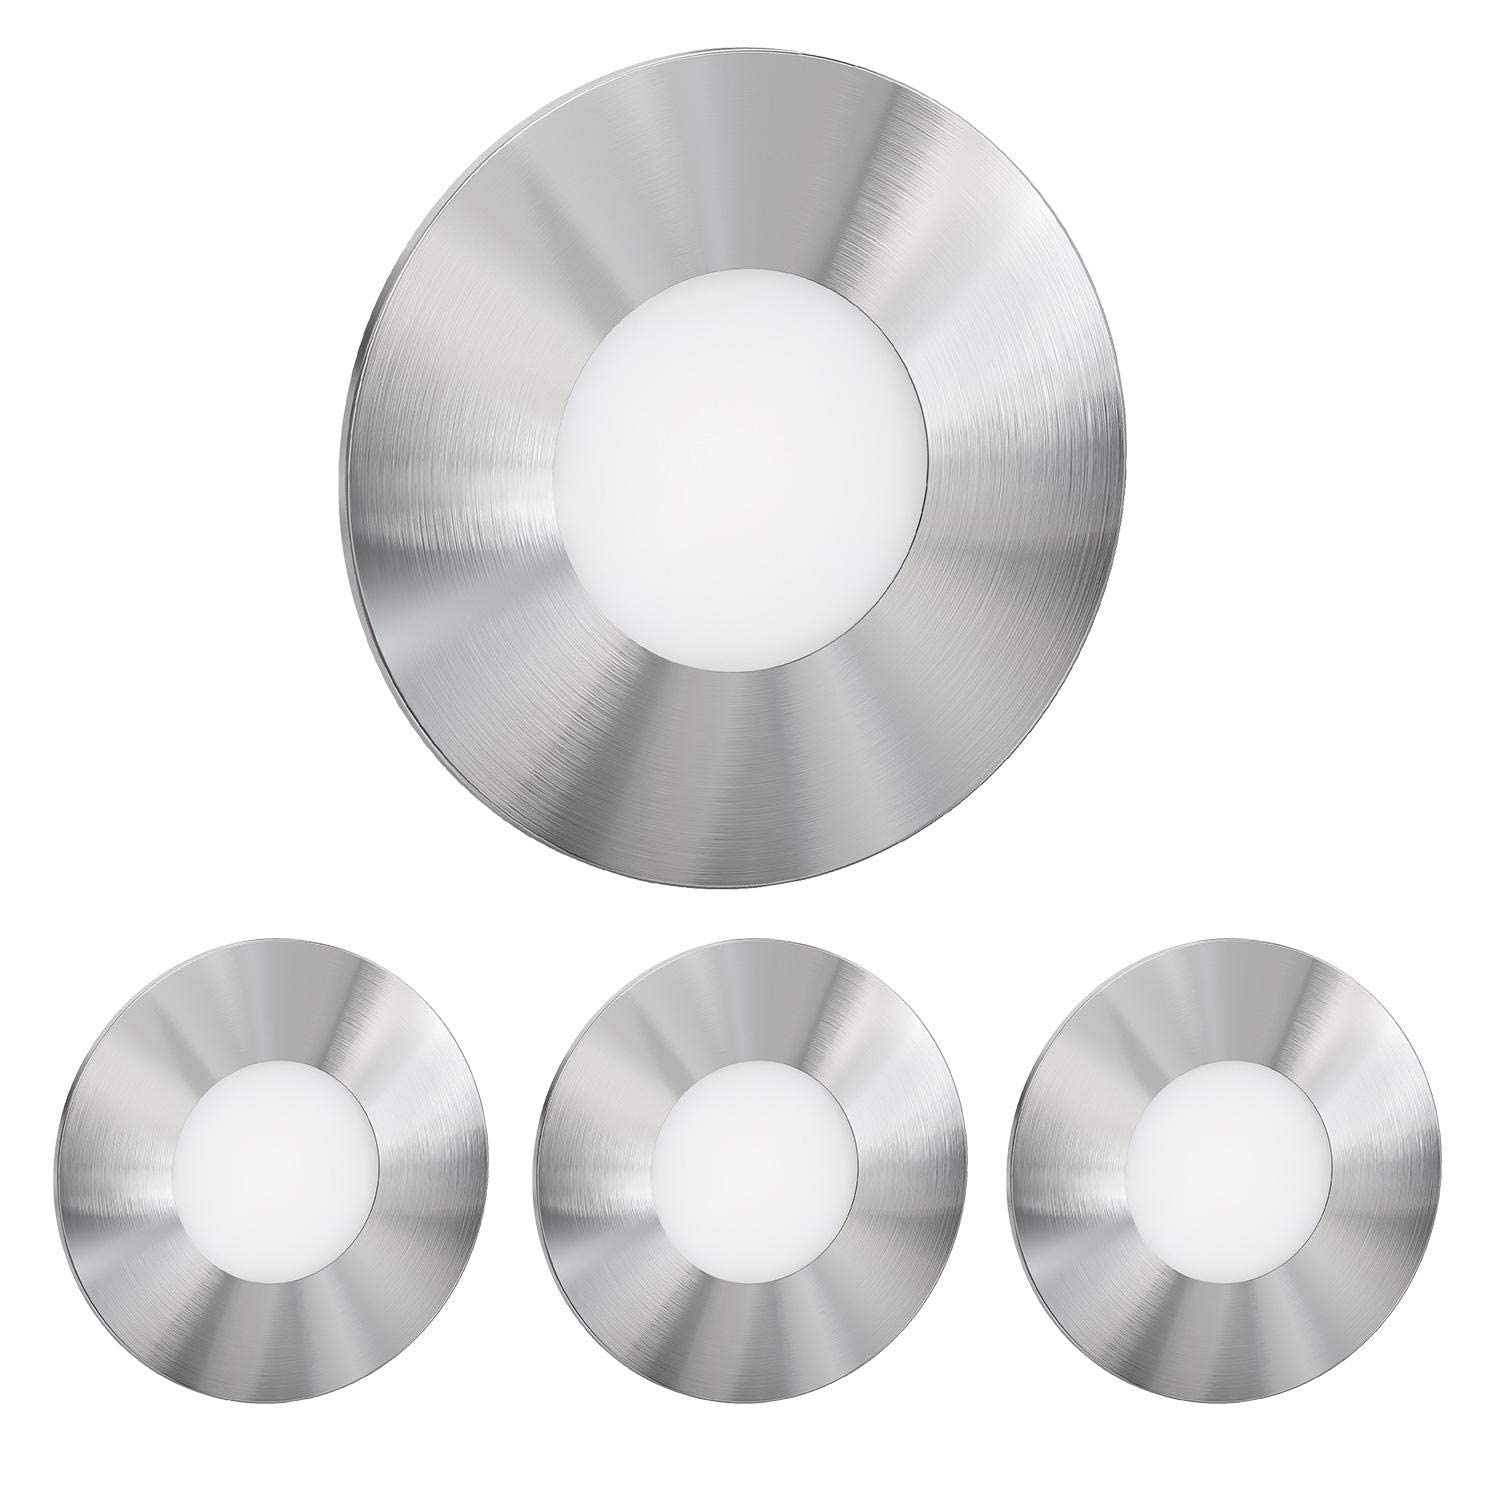 ledscom.de 4 Stück LED Treppenlicht/Wandeinbauleuchte FEX für innen und außen, rund, edelstahl, 85mm Ø, warmweiß